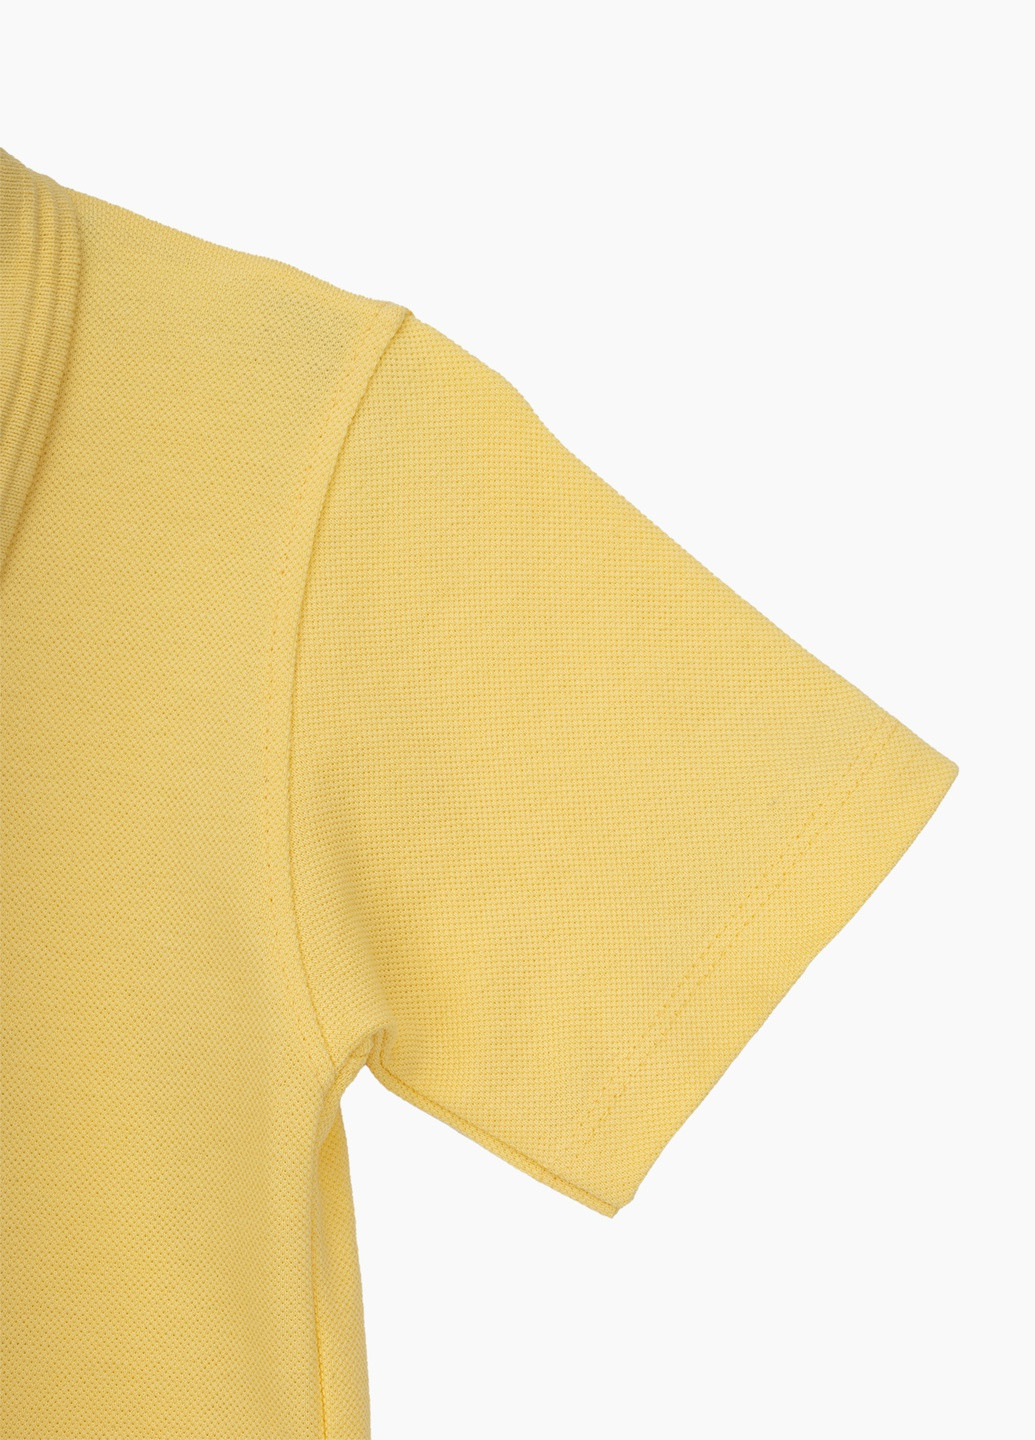 Желтая детская футболка-поло для мальчика Pitiki однотонная